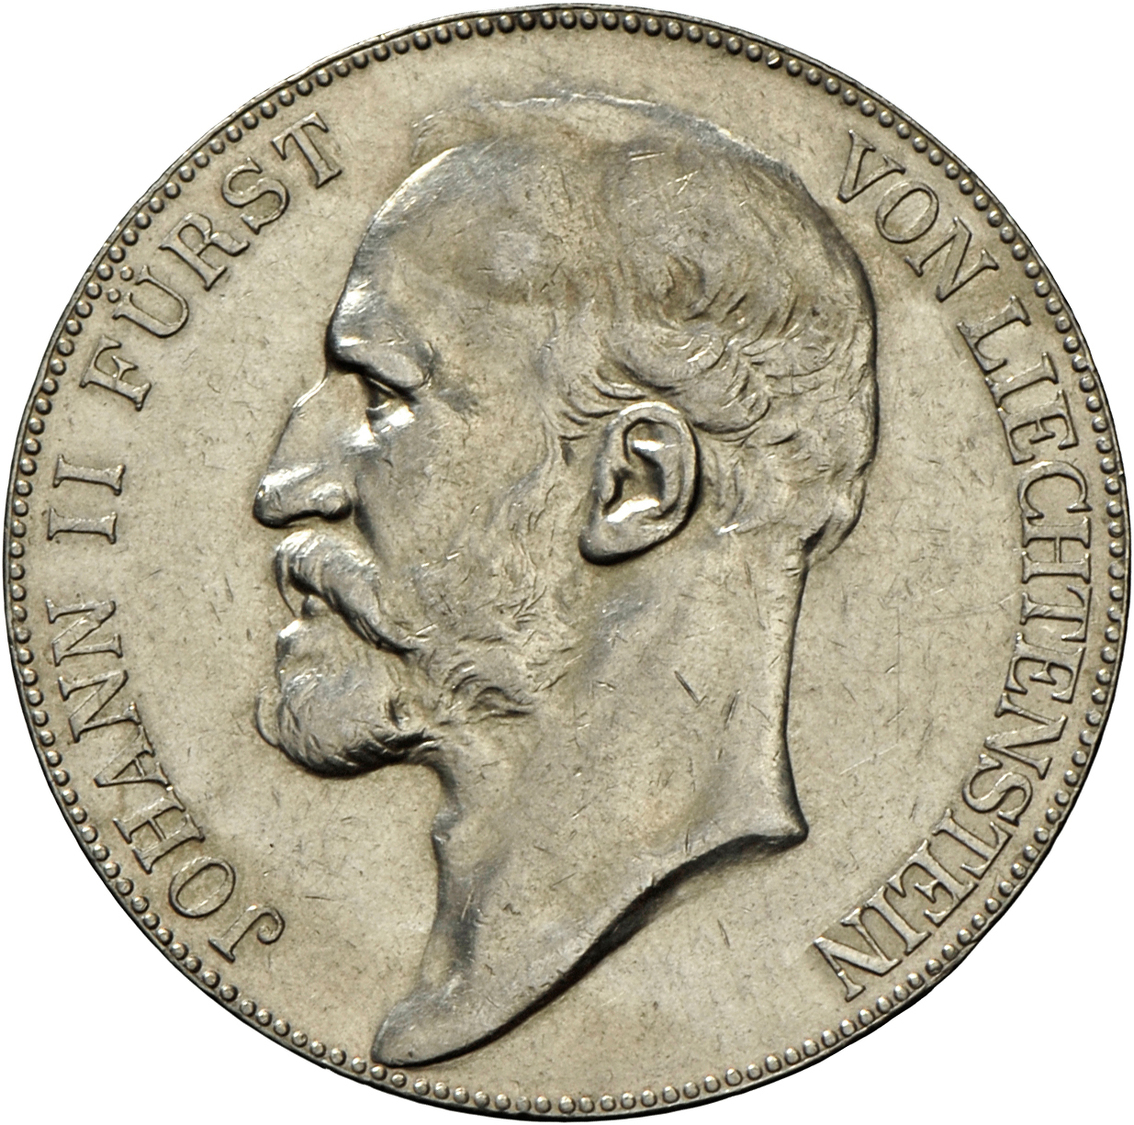 05140 Liechtenstein: Johann II (1858-1929): 5 Kronen 1910, Auflage 10.000 Stück, D.64, Sehr Schön - Vorzüglich. - Liechtenstein